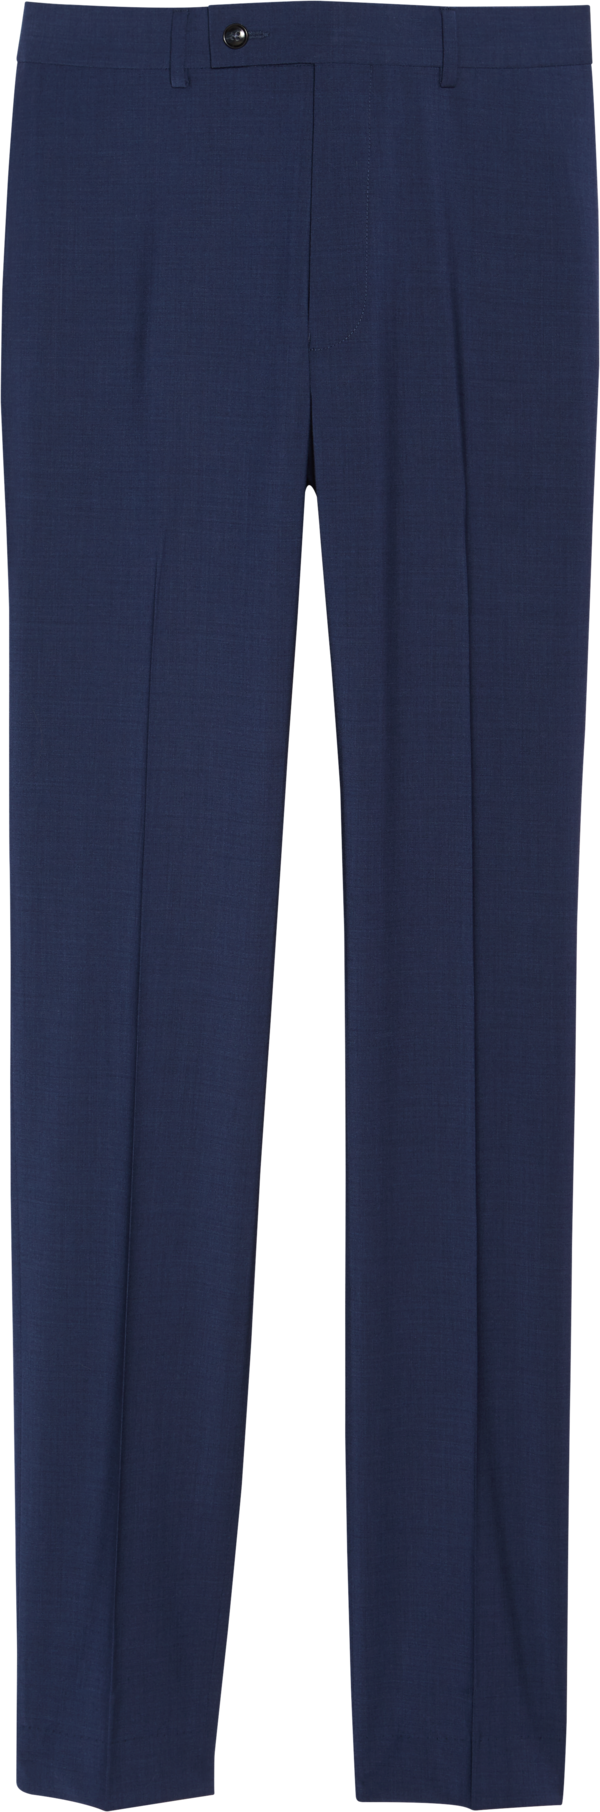 Calvin Klein Men's Suit Separates Pants Blue - Size: 38W x 30L - Blue - male